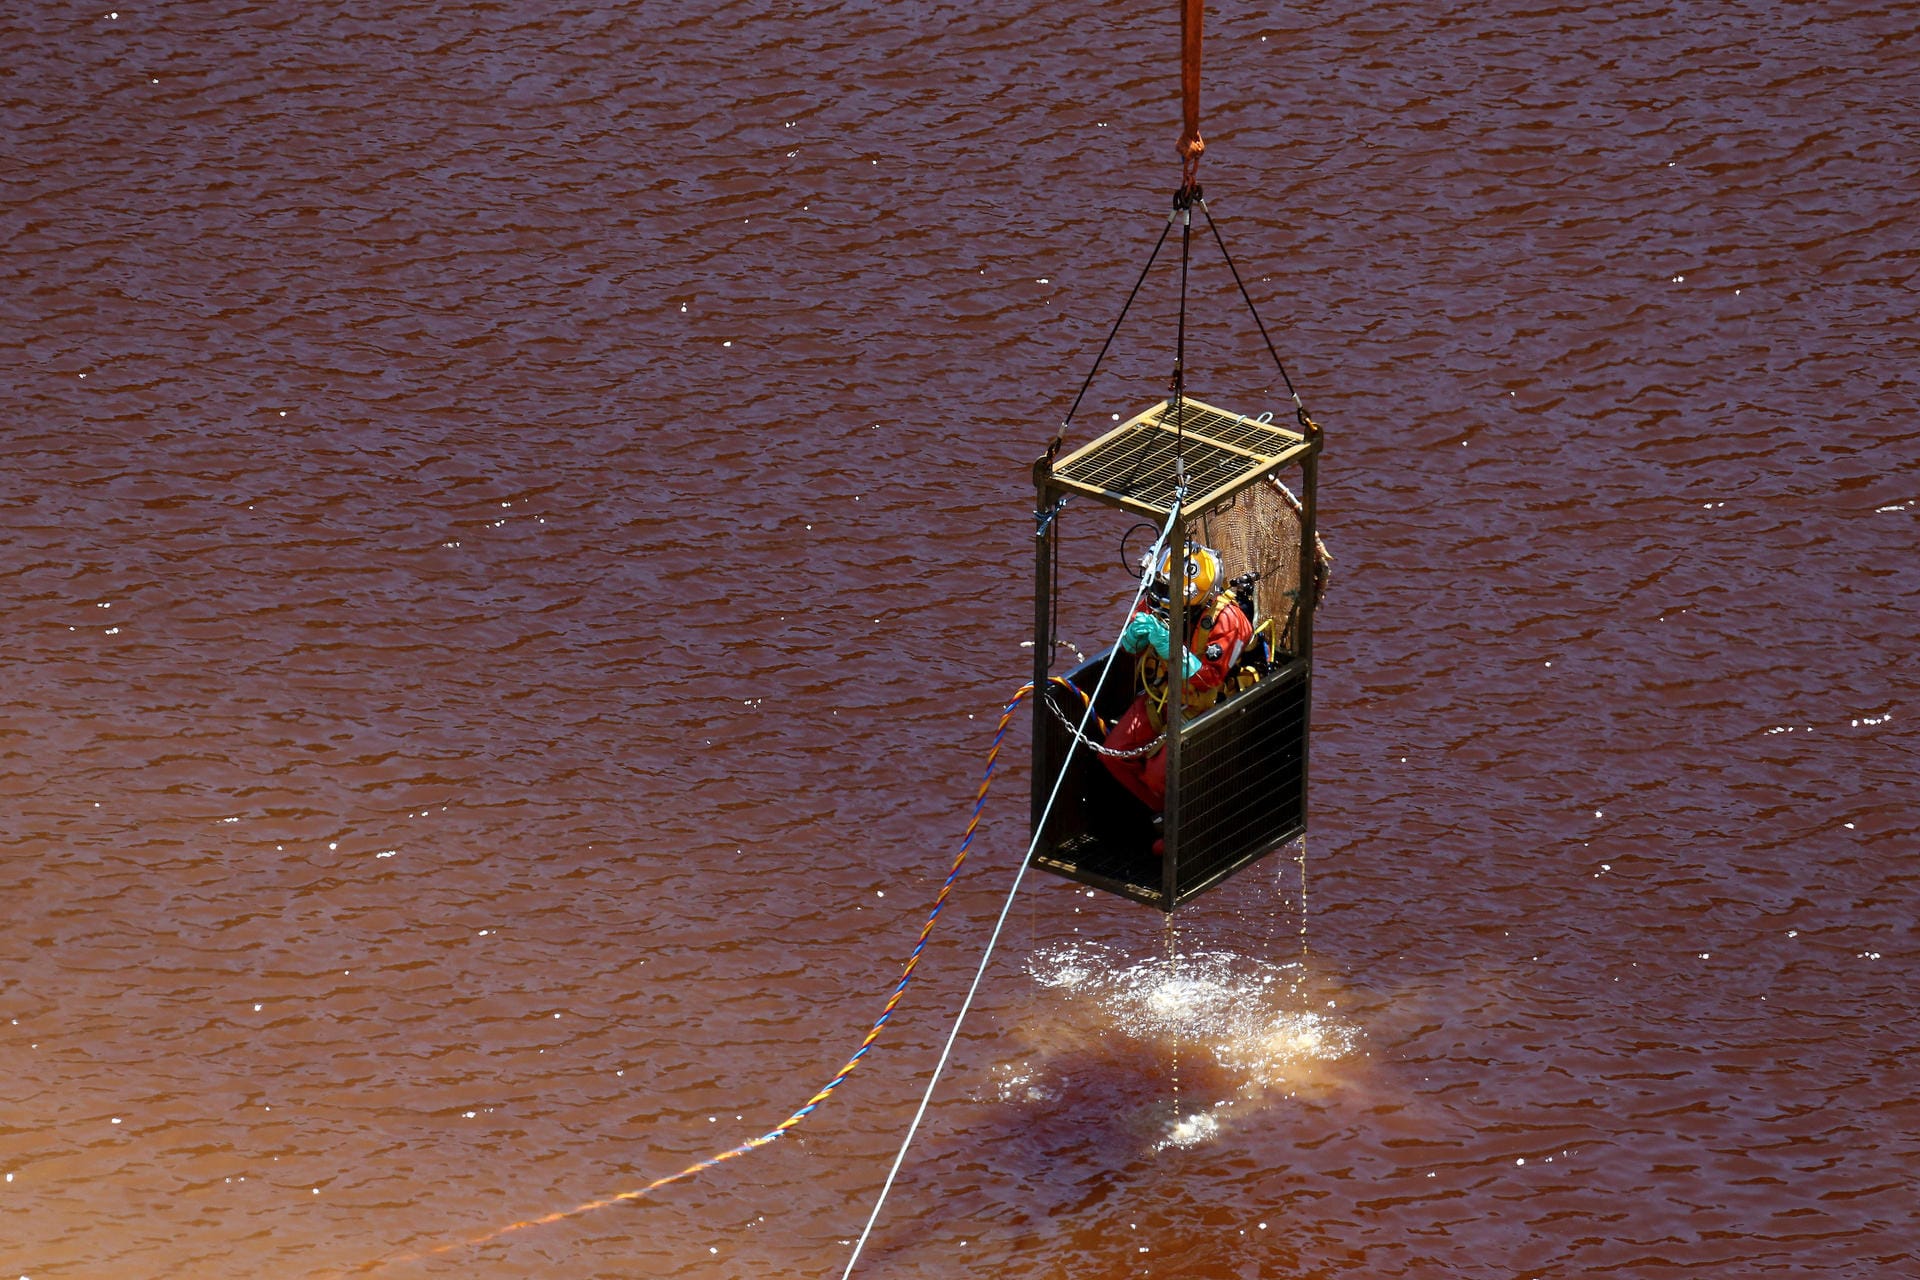 Ein Taucher in einem Käfig wird aus dem See gehoben, nachdem er dort nach weiteren Koffern, in denen Leichenteile vermutet werden, suchte. Der See ist durch Chemikalien verseucht, Taucher können nur mit Schutzkleidung darin schwimmen.